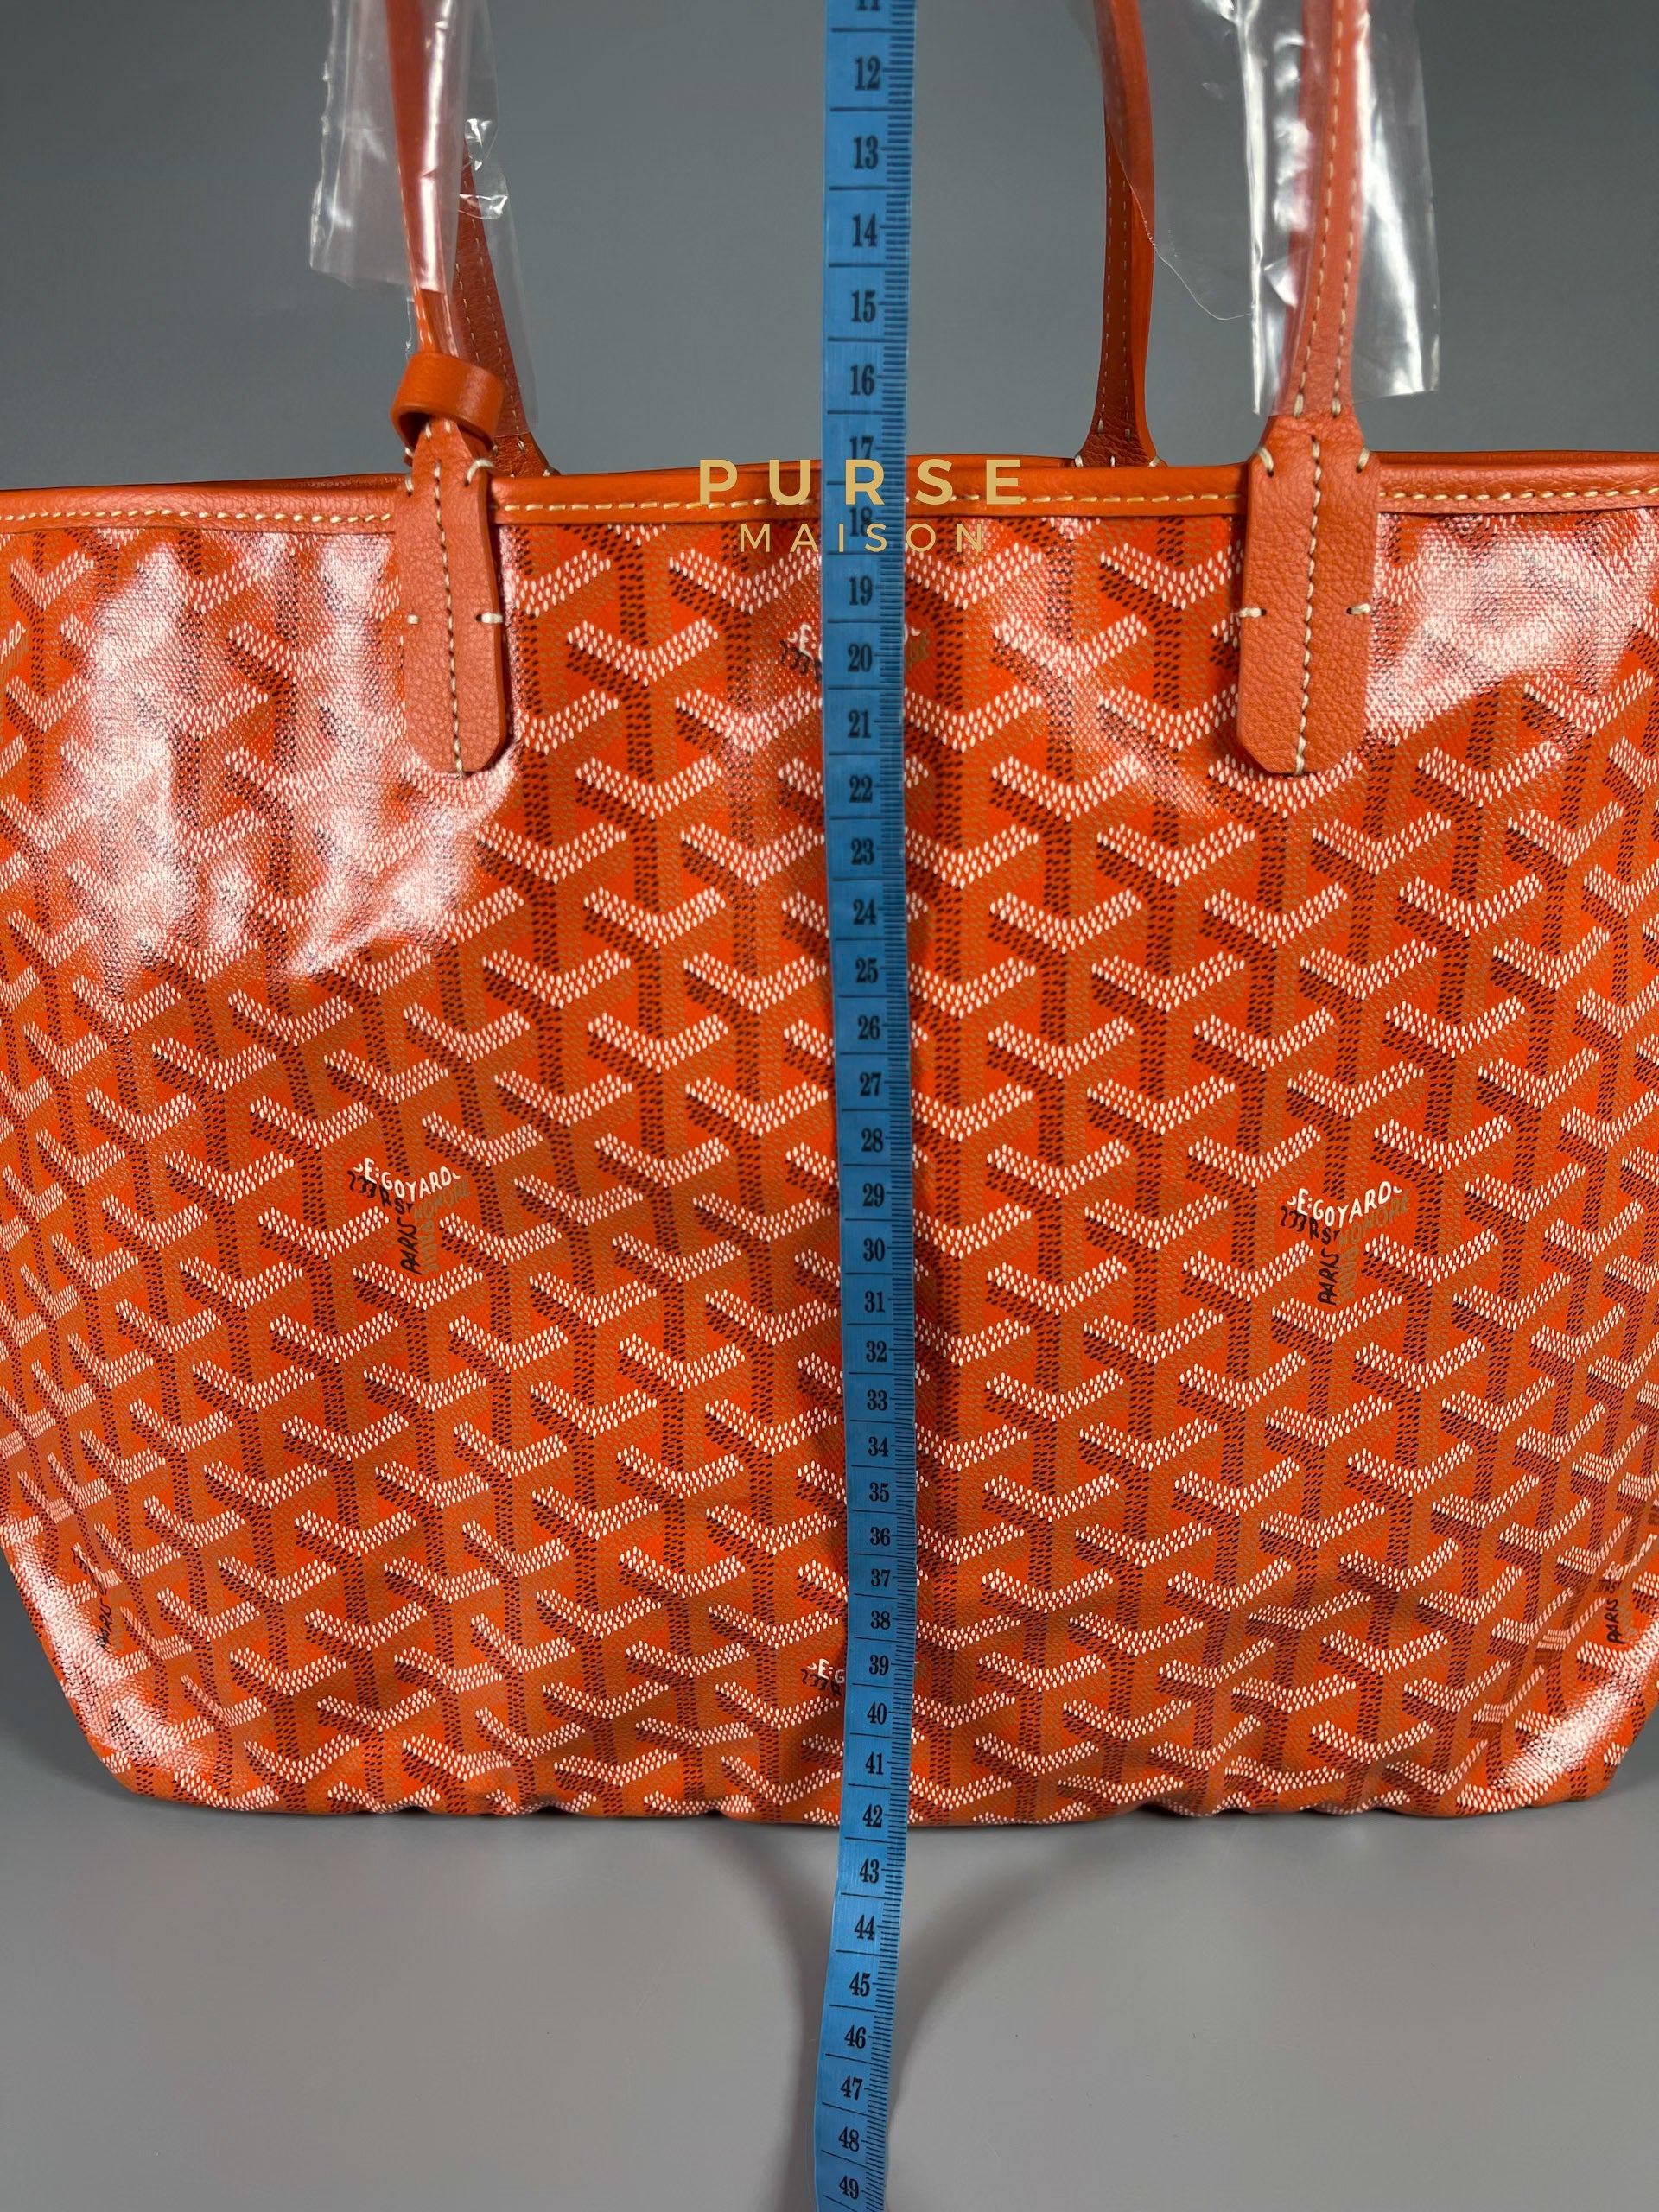 Goyard St. Louis PM Orange | Purse Maison Luxury Bags Shop